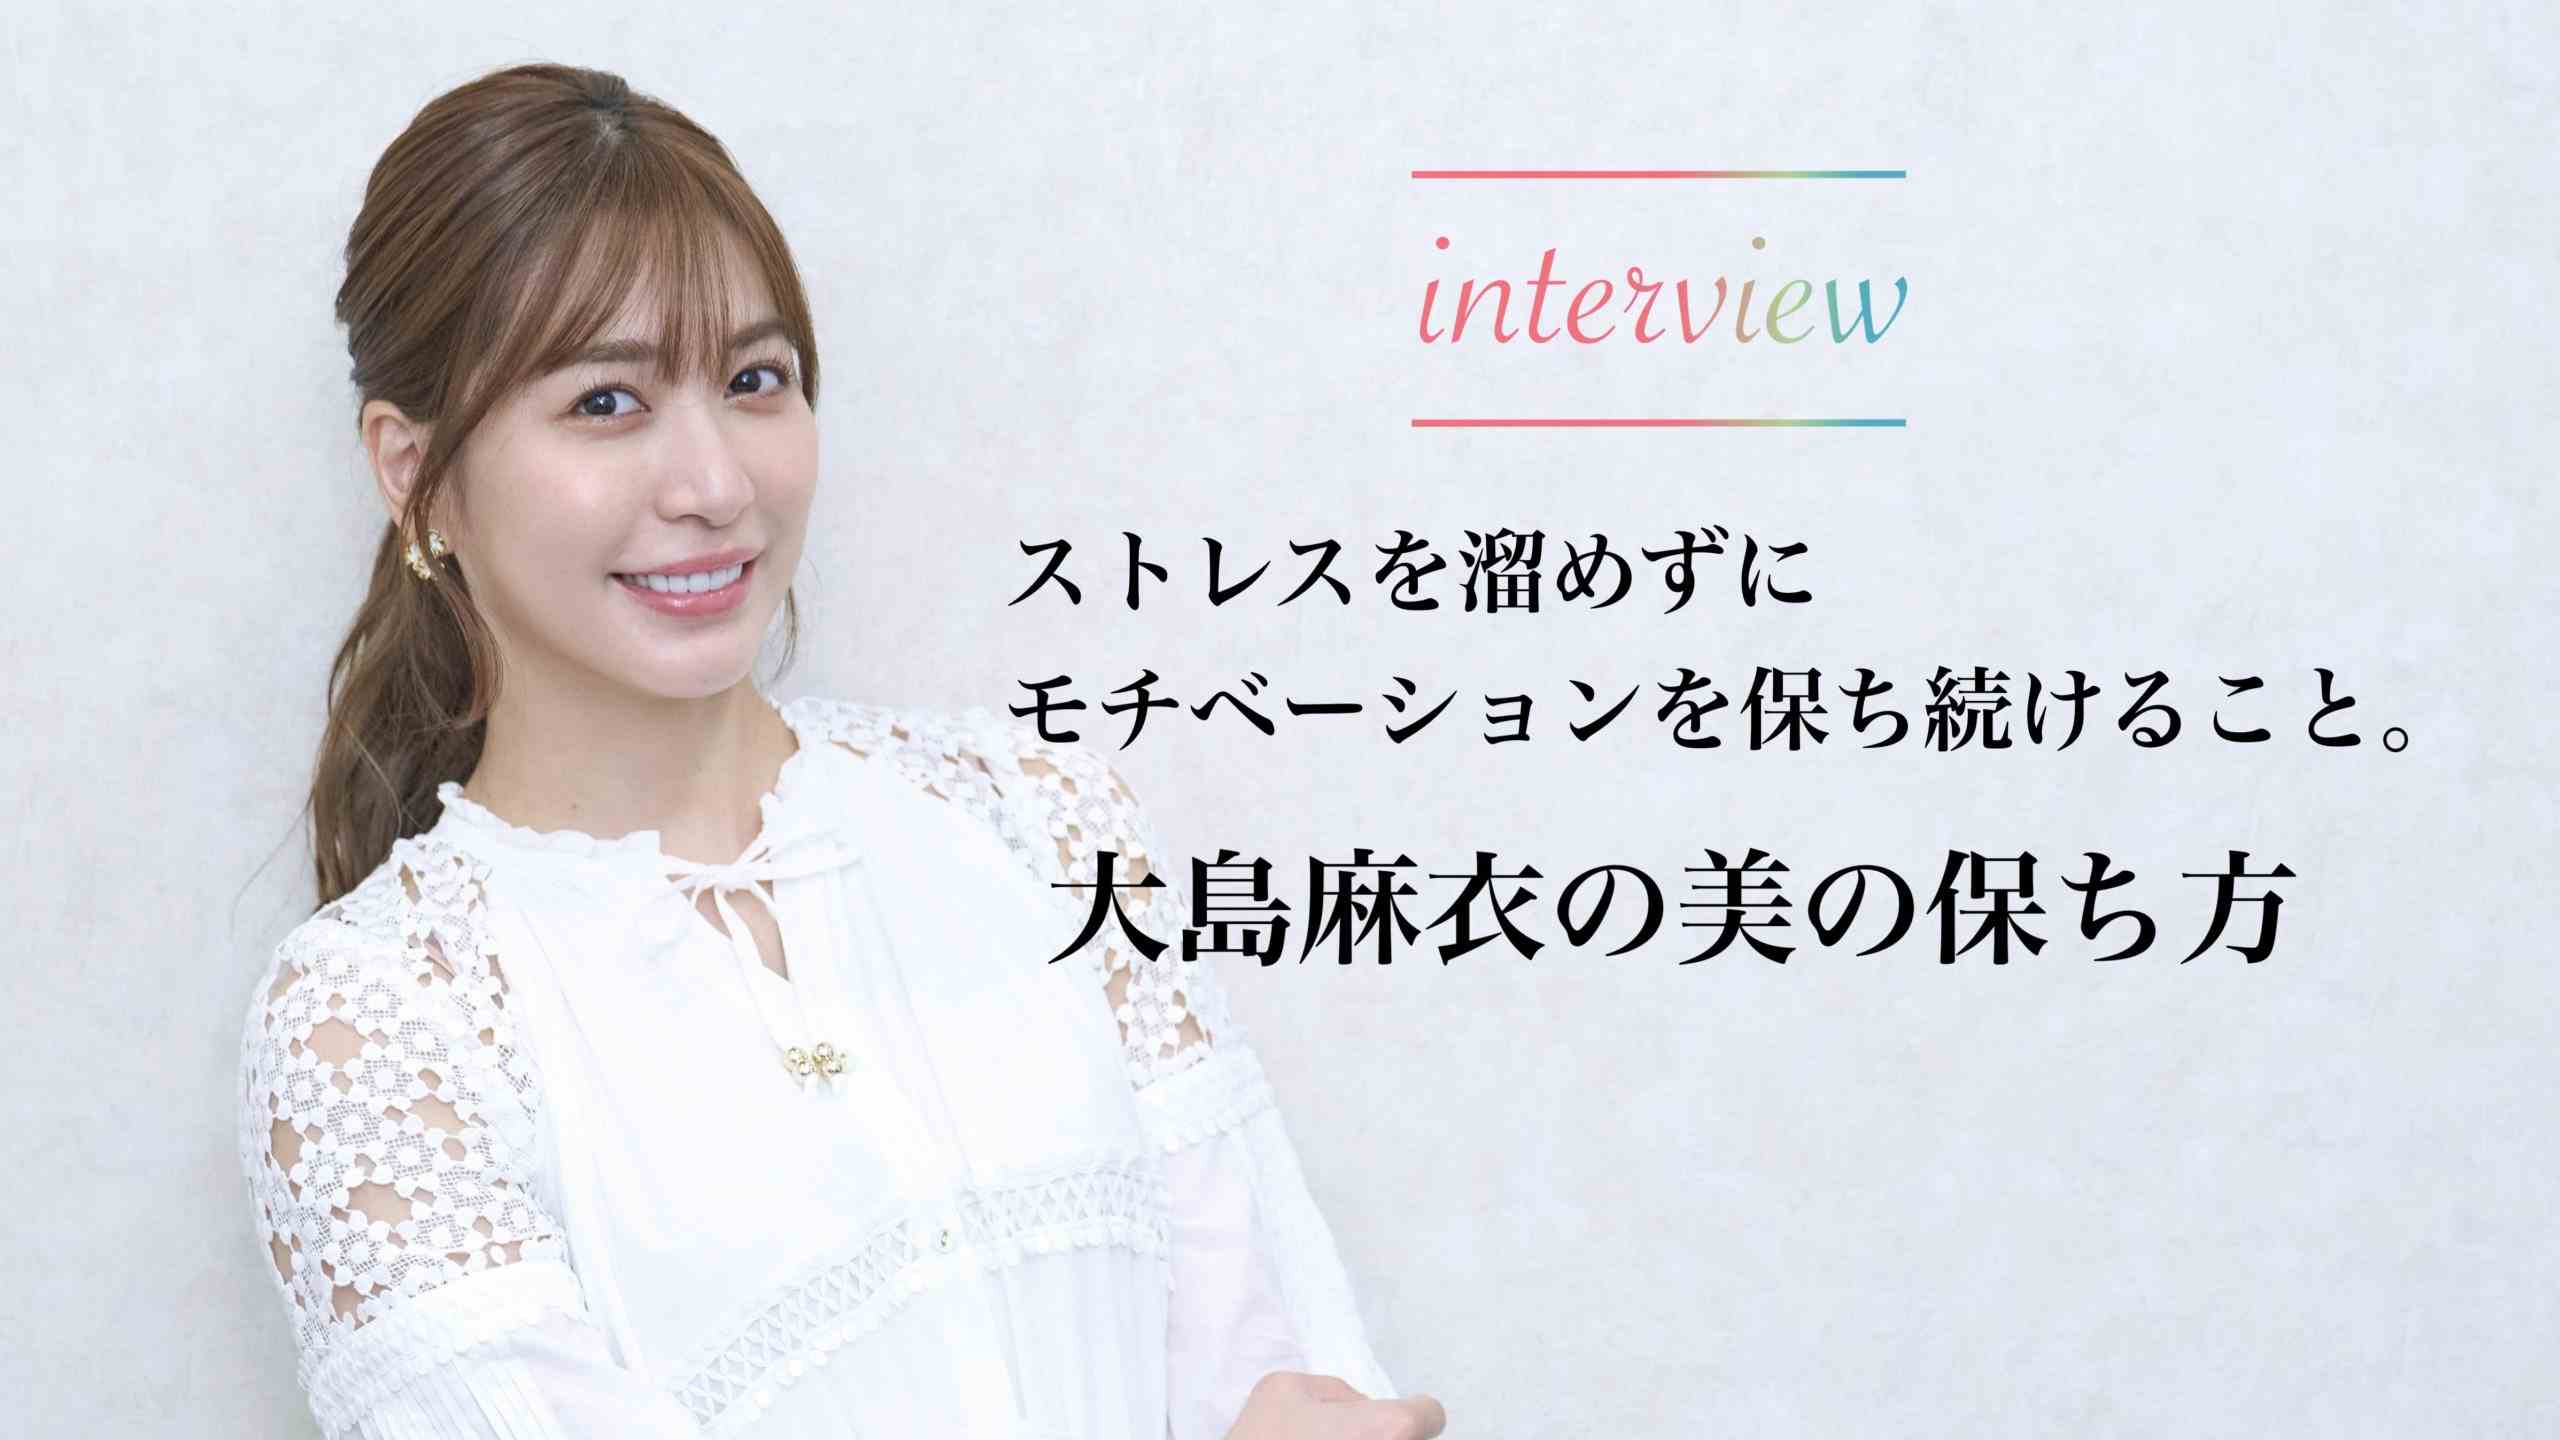 大島麻衣さんへのインタビュー記事を公開しました。